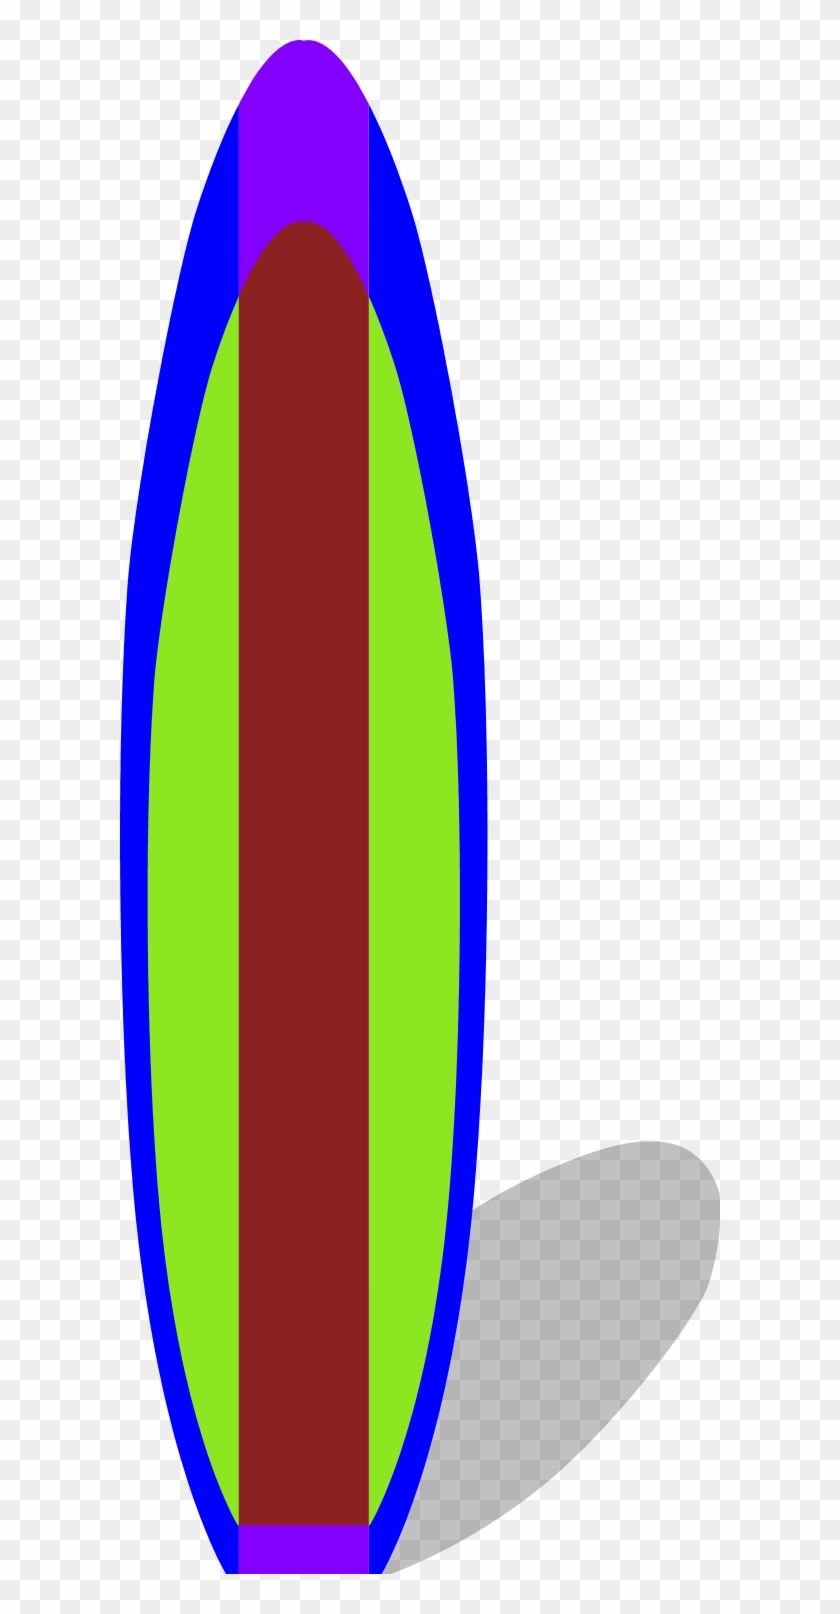 Surfboard Clip Art At Vector Clip Art Image - Surfboard Clip Art At Vector Clip Art Image #61397